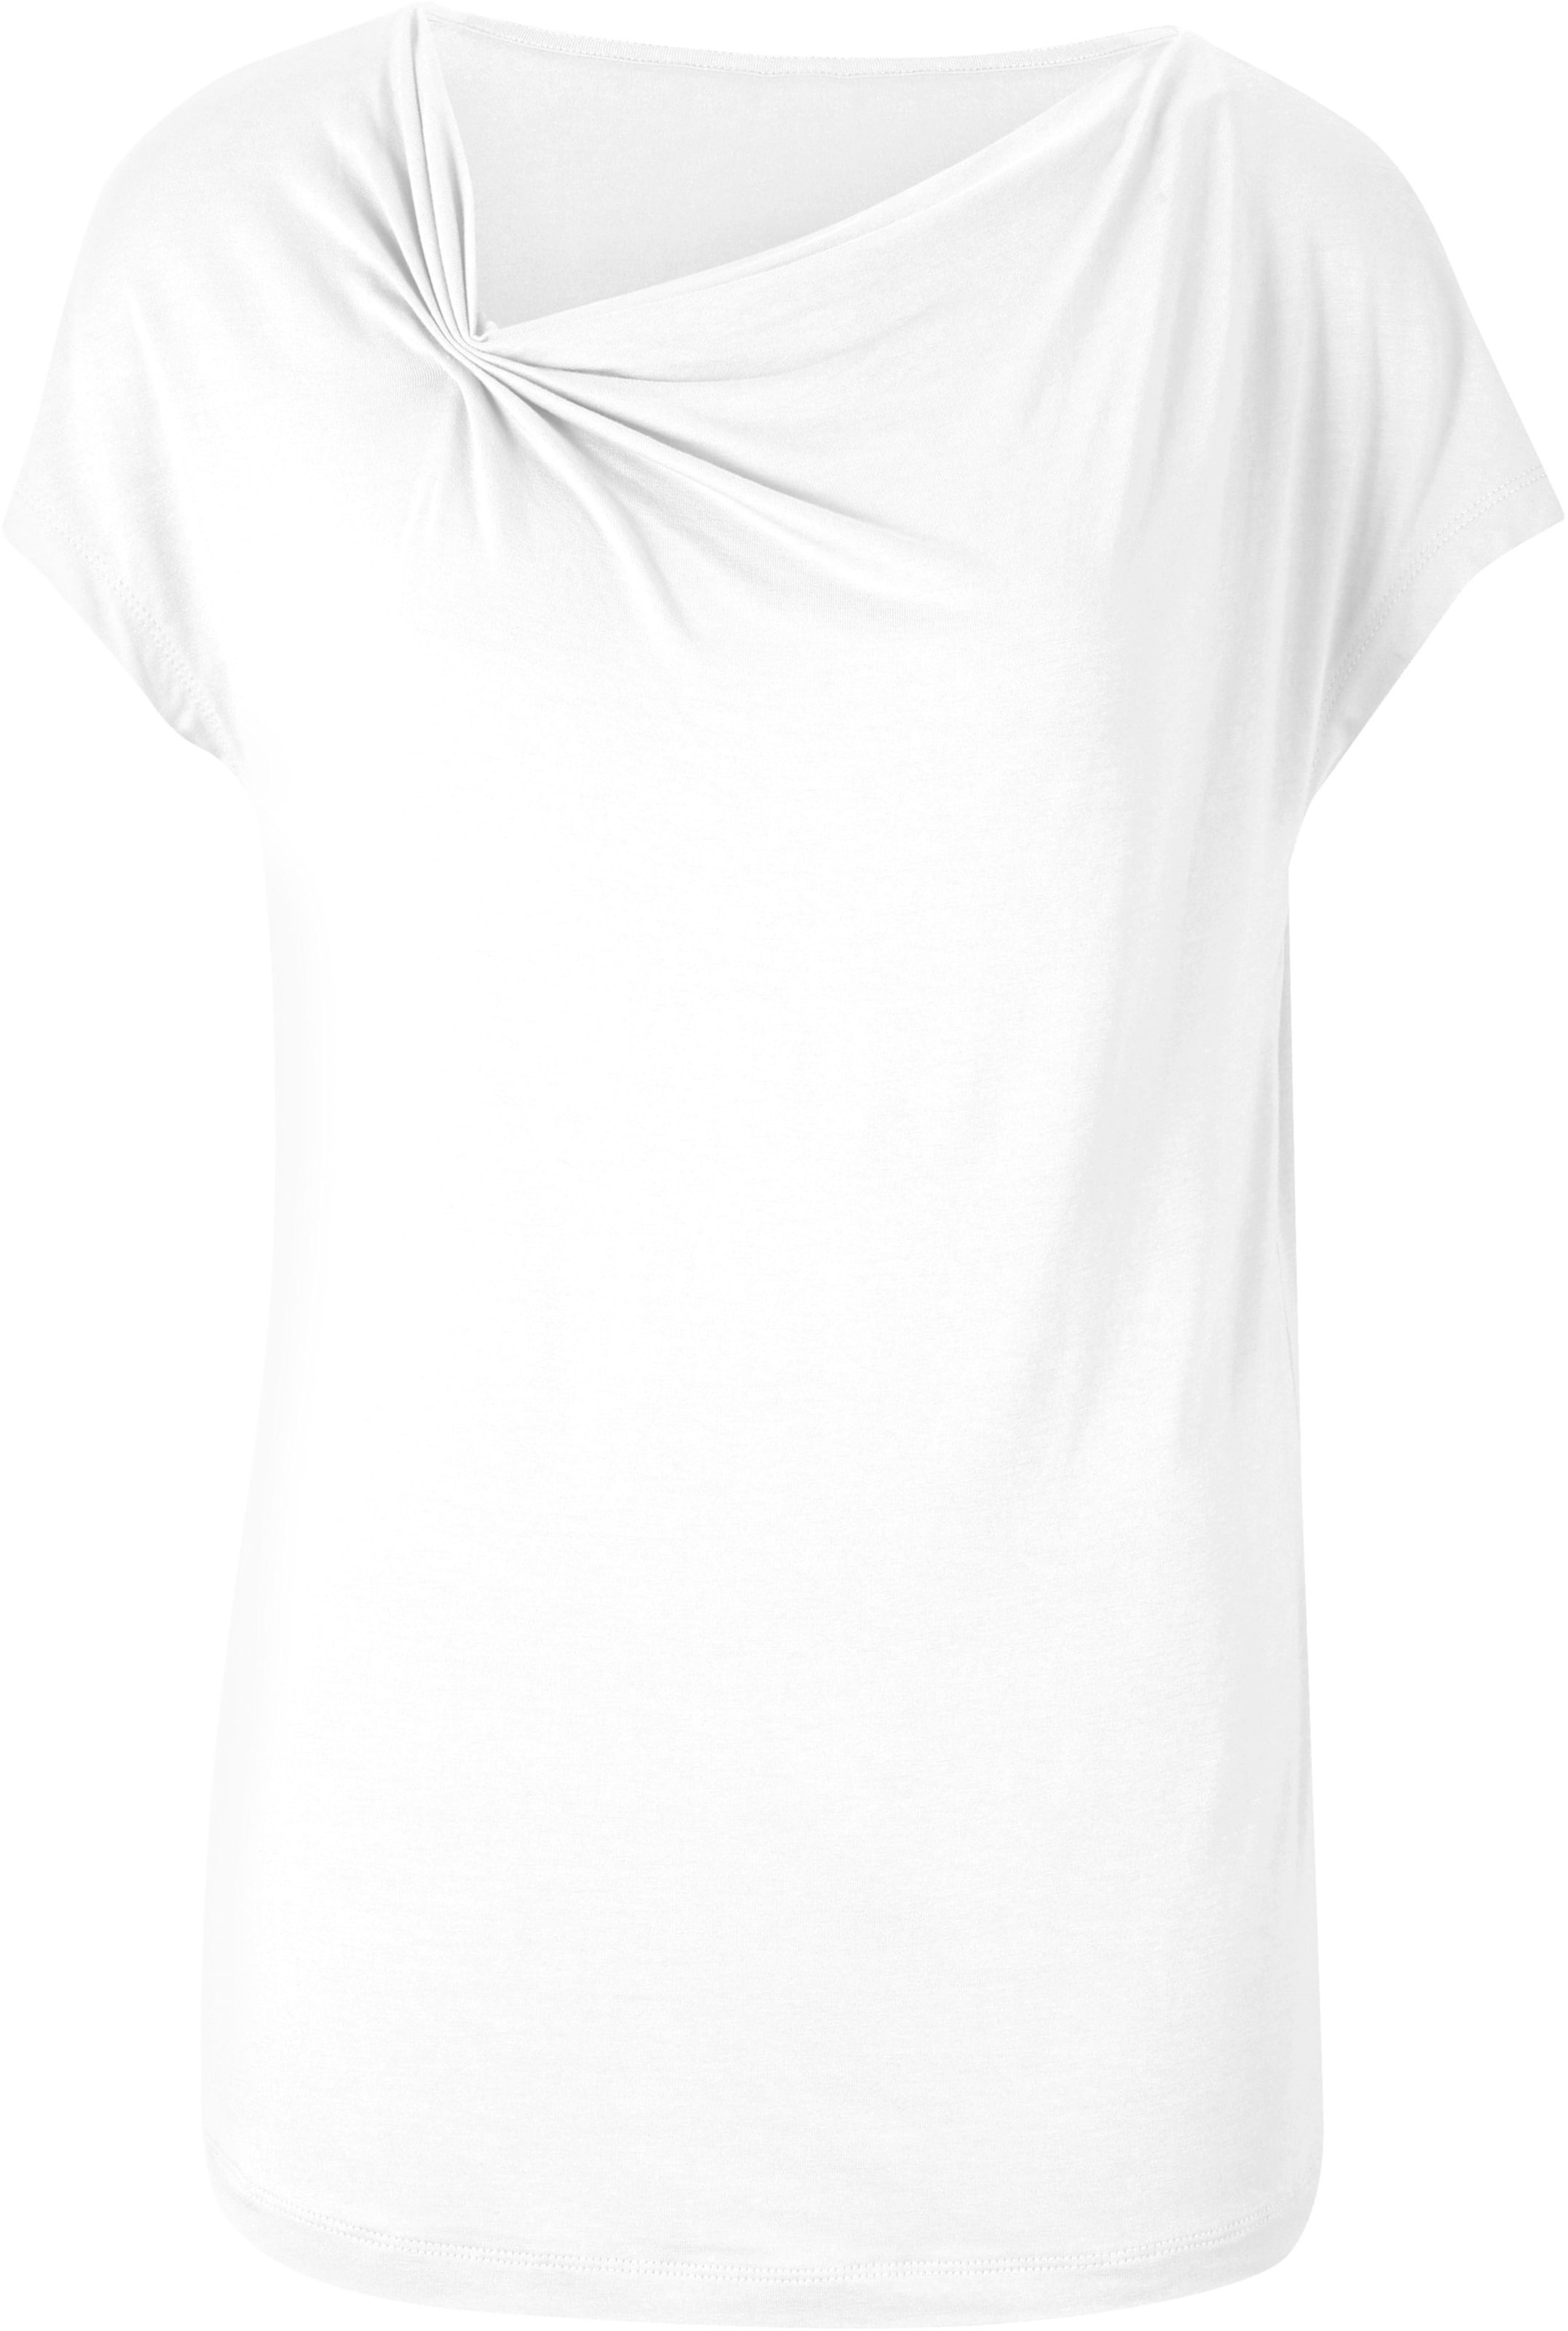 sung günstig Kaufen-Shirt in weiß von heine. Shirt in weiß von heine <![CDATA[Shirt Mit raffinierter asymmetrischer Ausschnittlösung und in weich fließender Qualität. Figurumspielend, mit Kurzarm.]]>. 